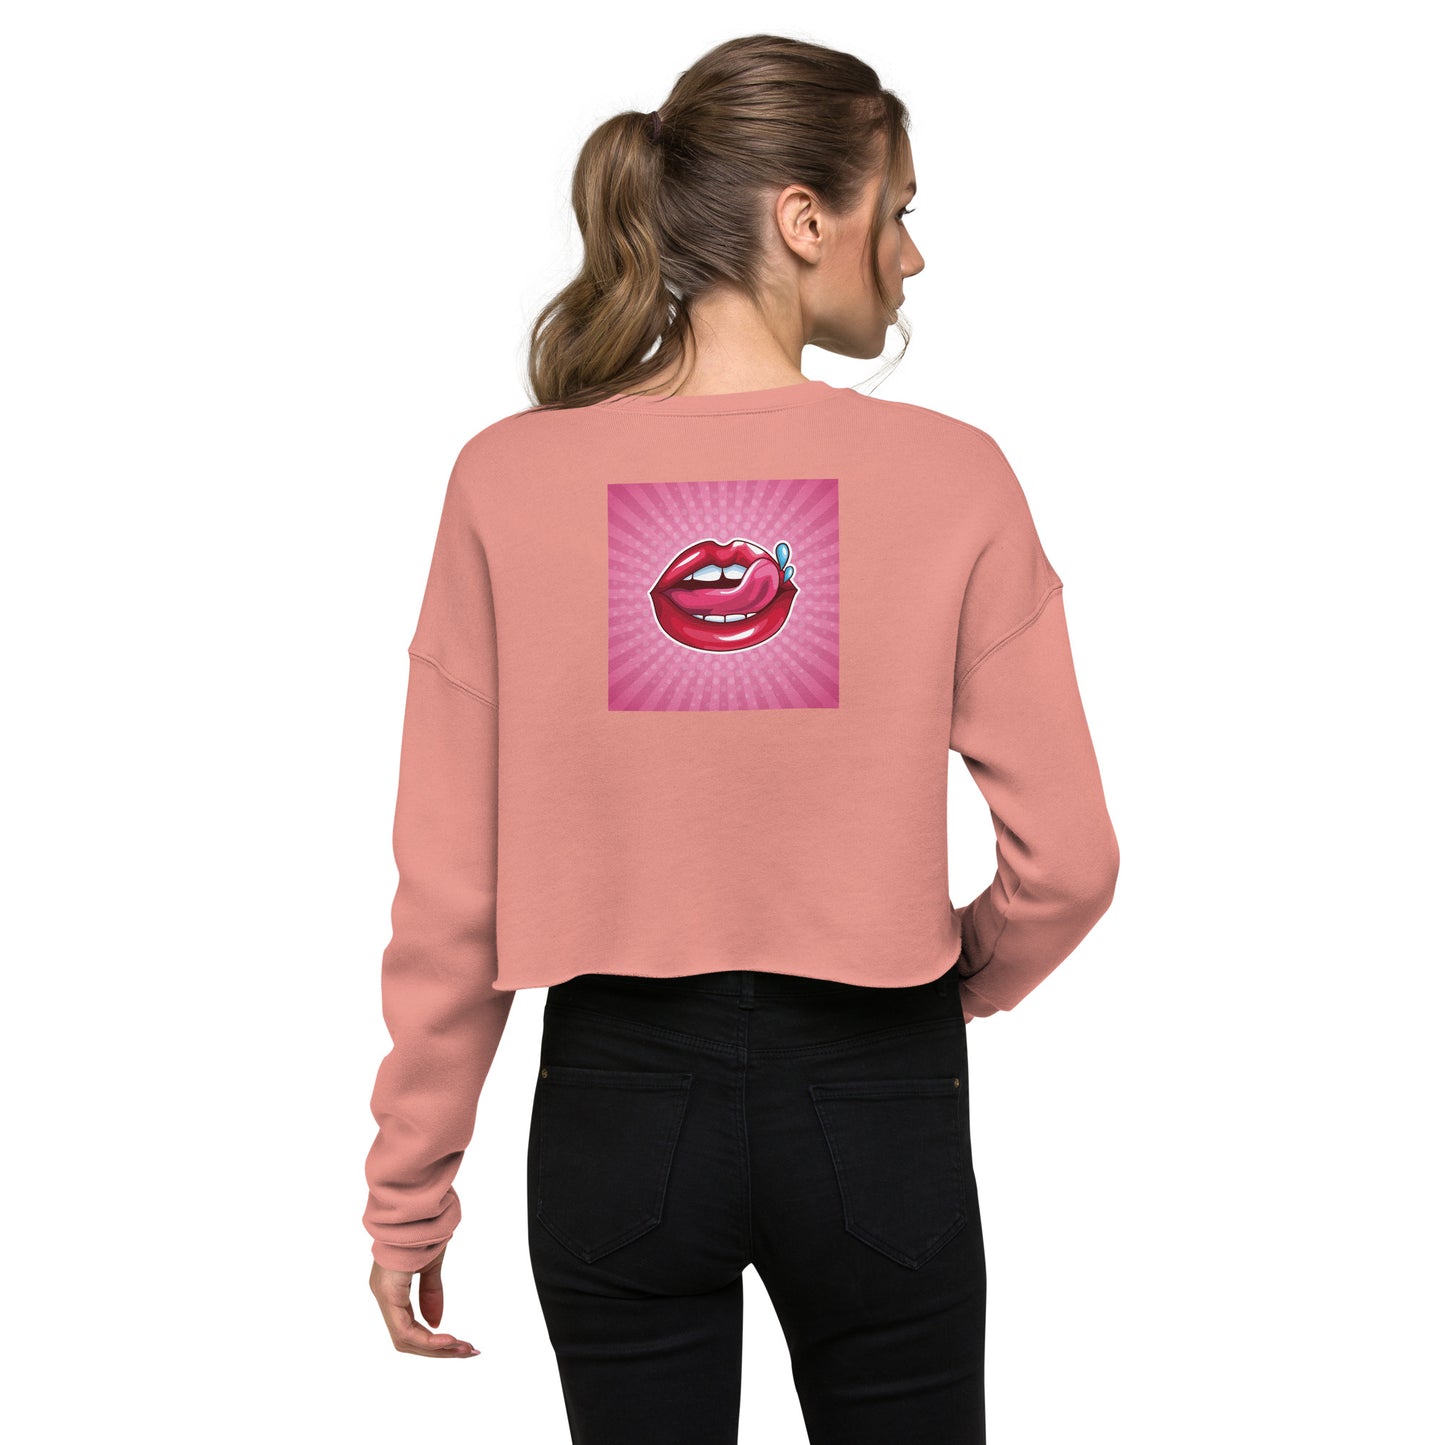 Crop Sweatshirt with Lips design (sourced Vecteezy.com)